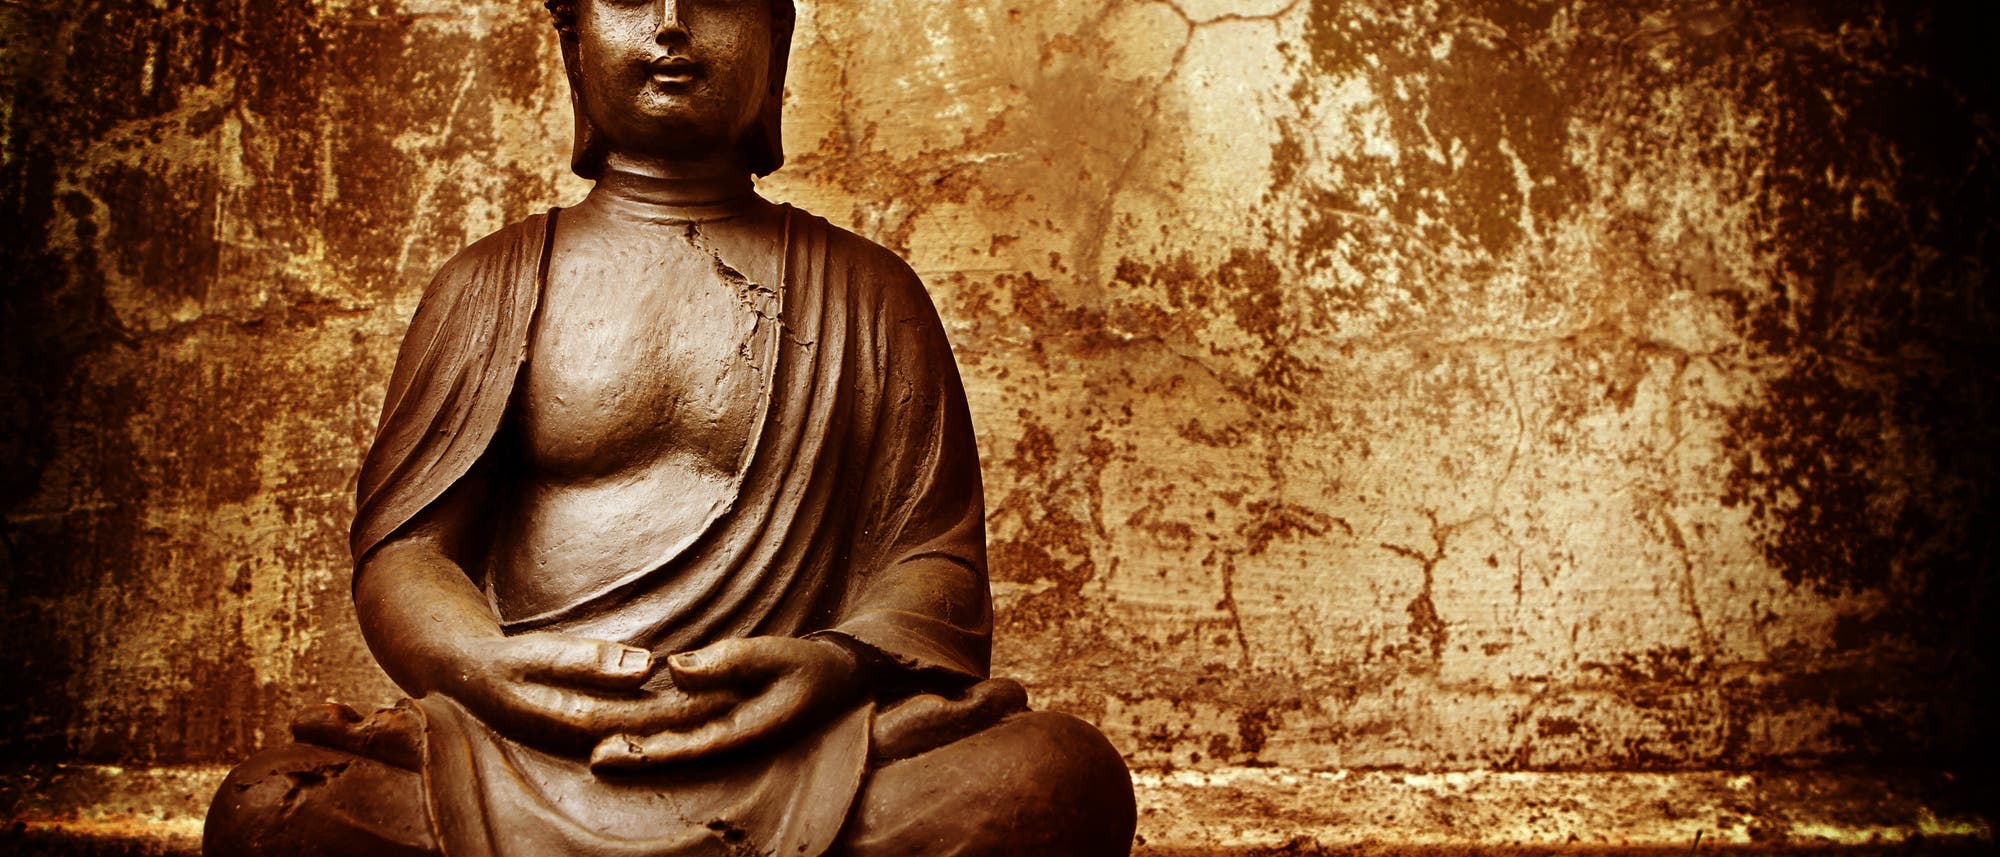 Buddha beim Meditieren, die Hände vorm Bauch gefaltet